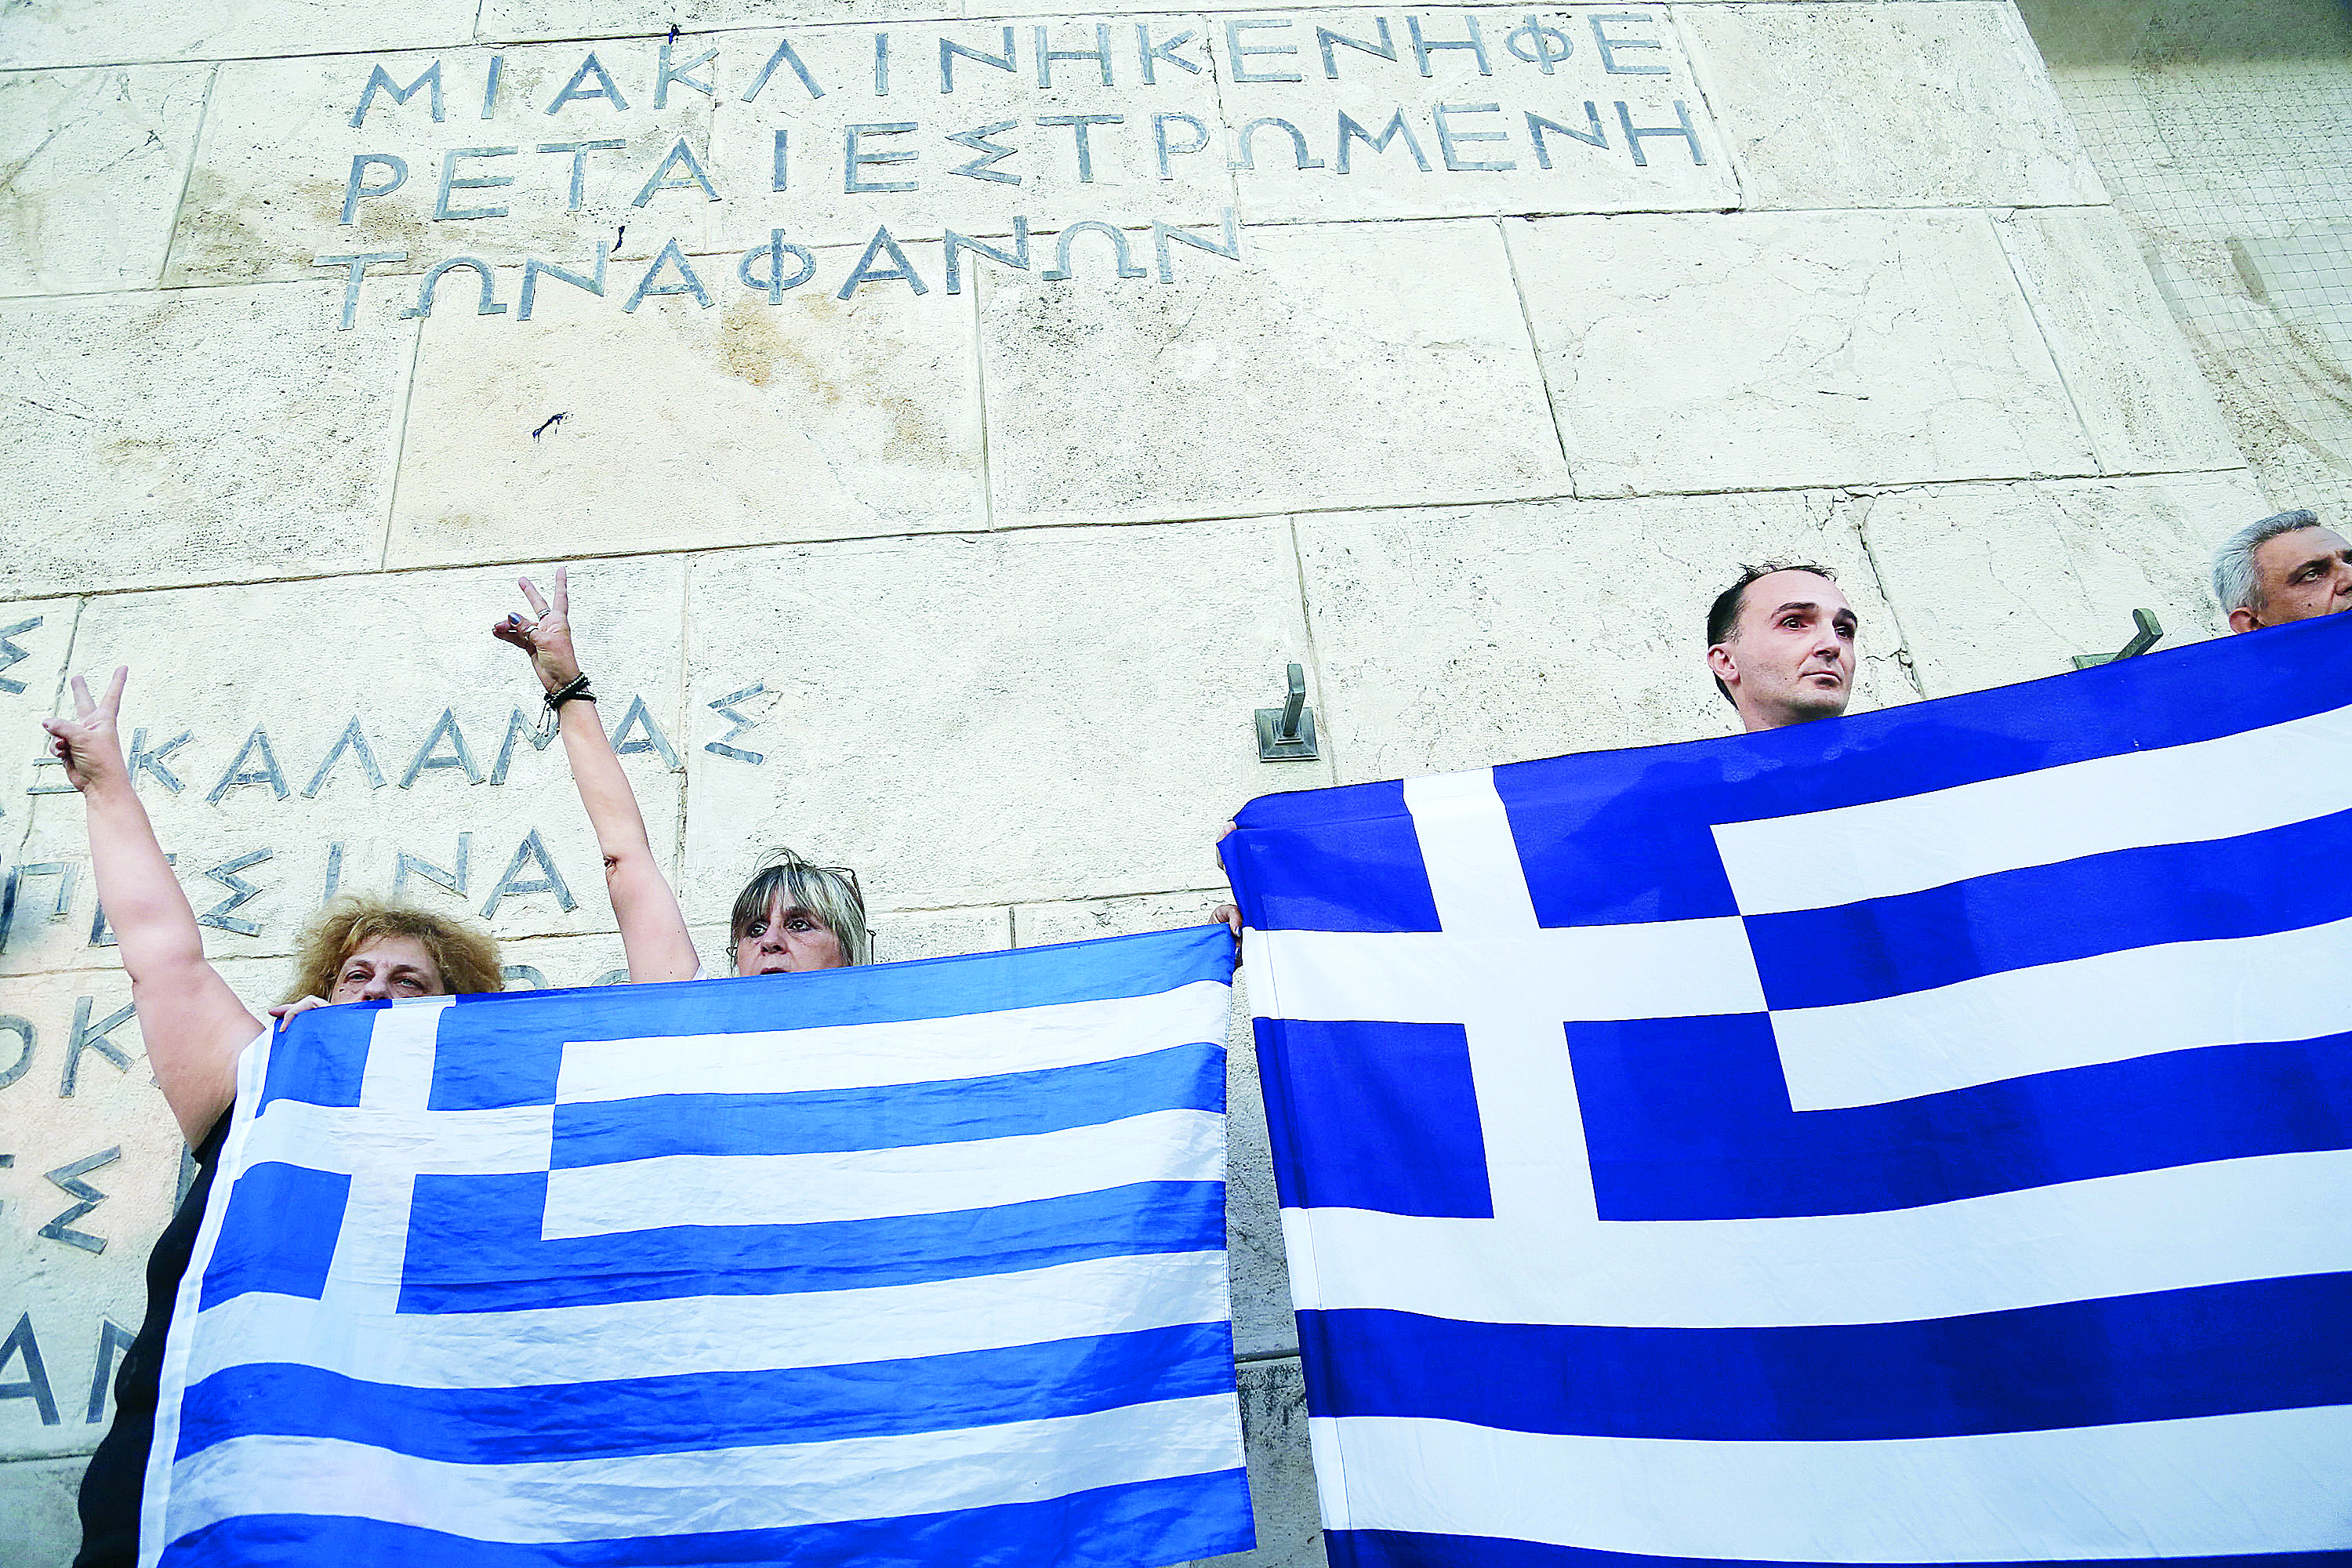 Grecia, China y tu bolsillo